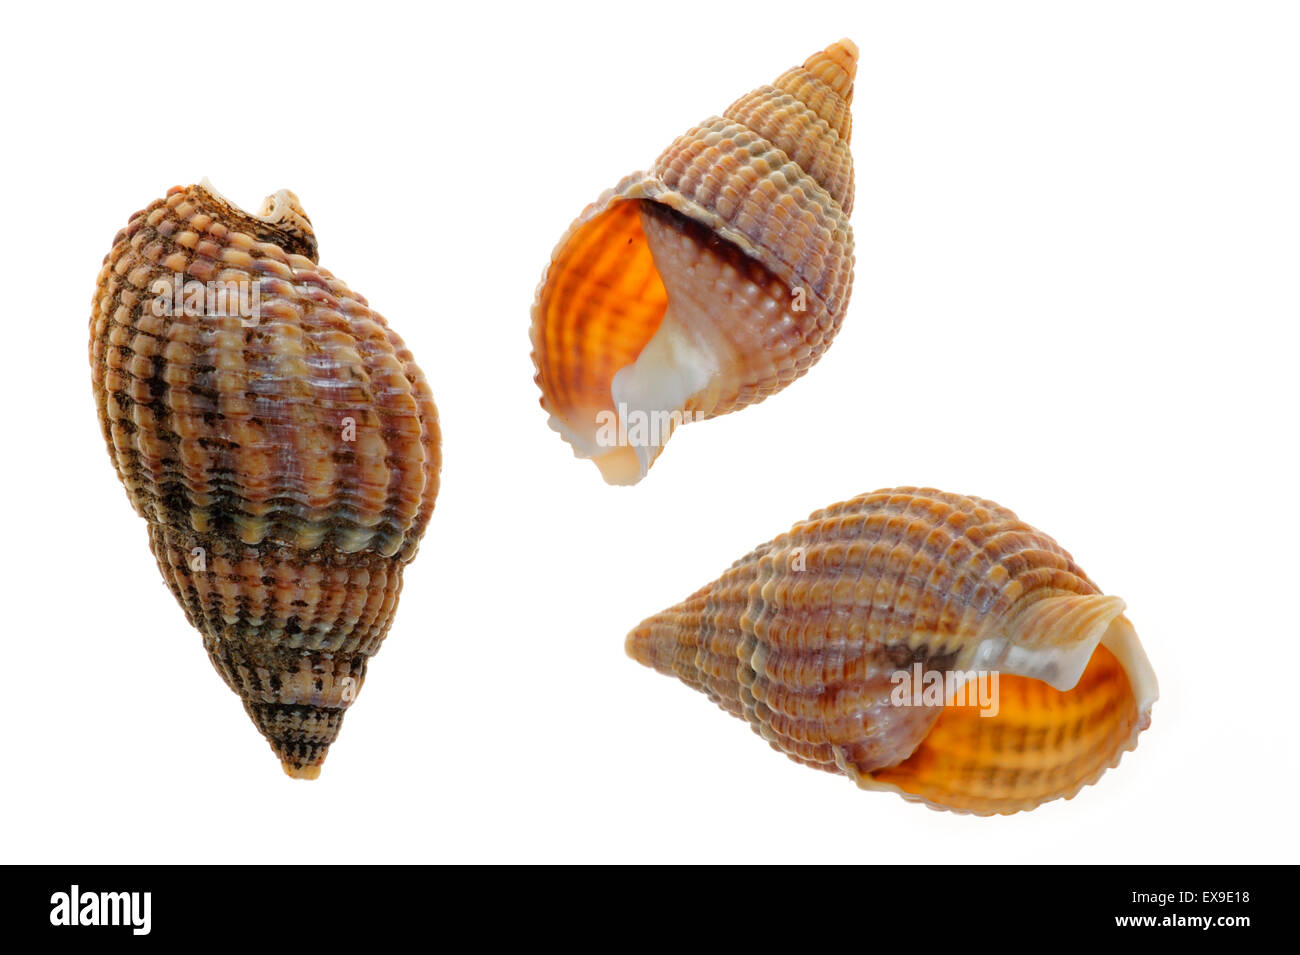 Netted dog whelk (Nassarius reticulatus / Hinia reticulata) shells on white background Stock Photo